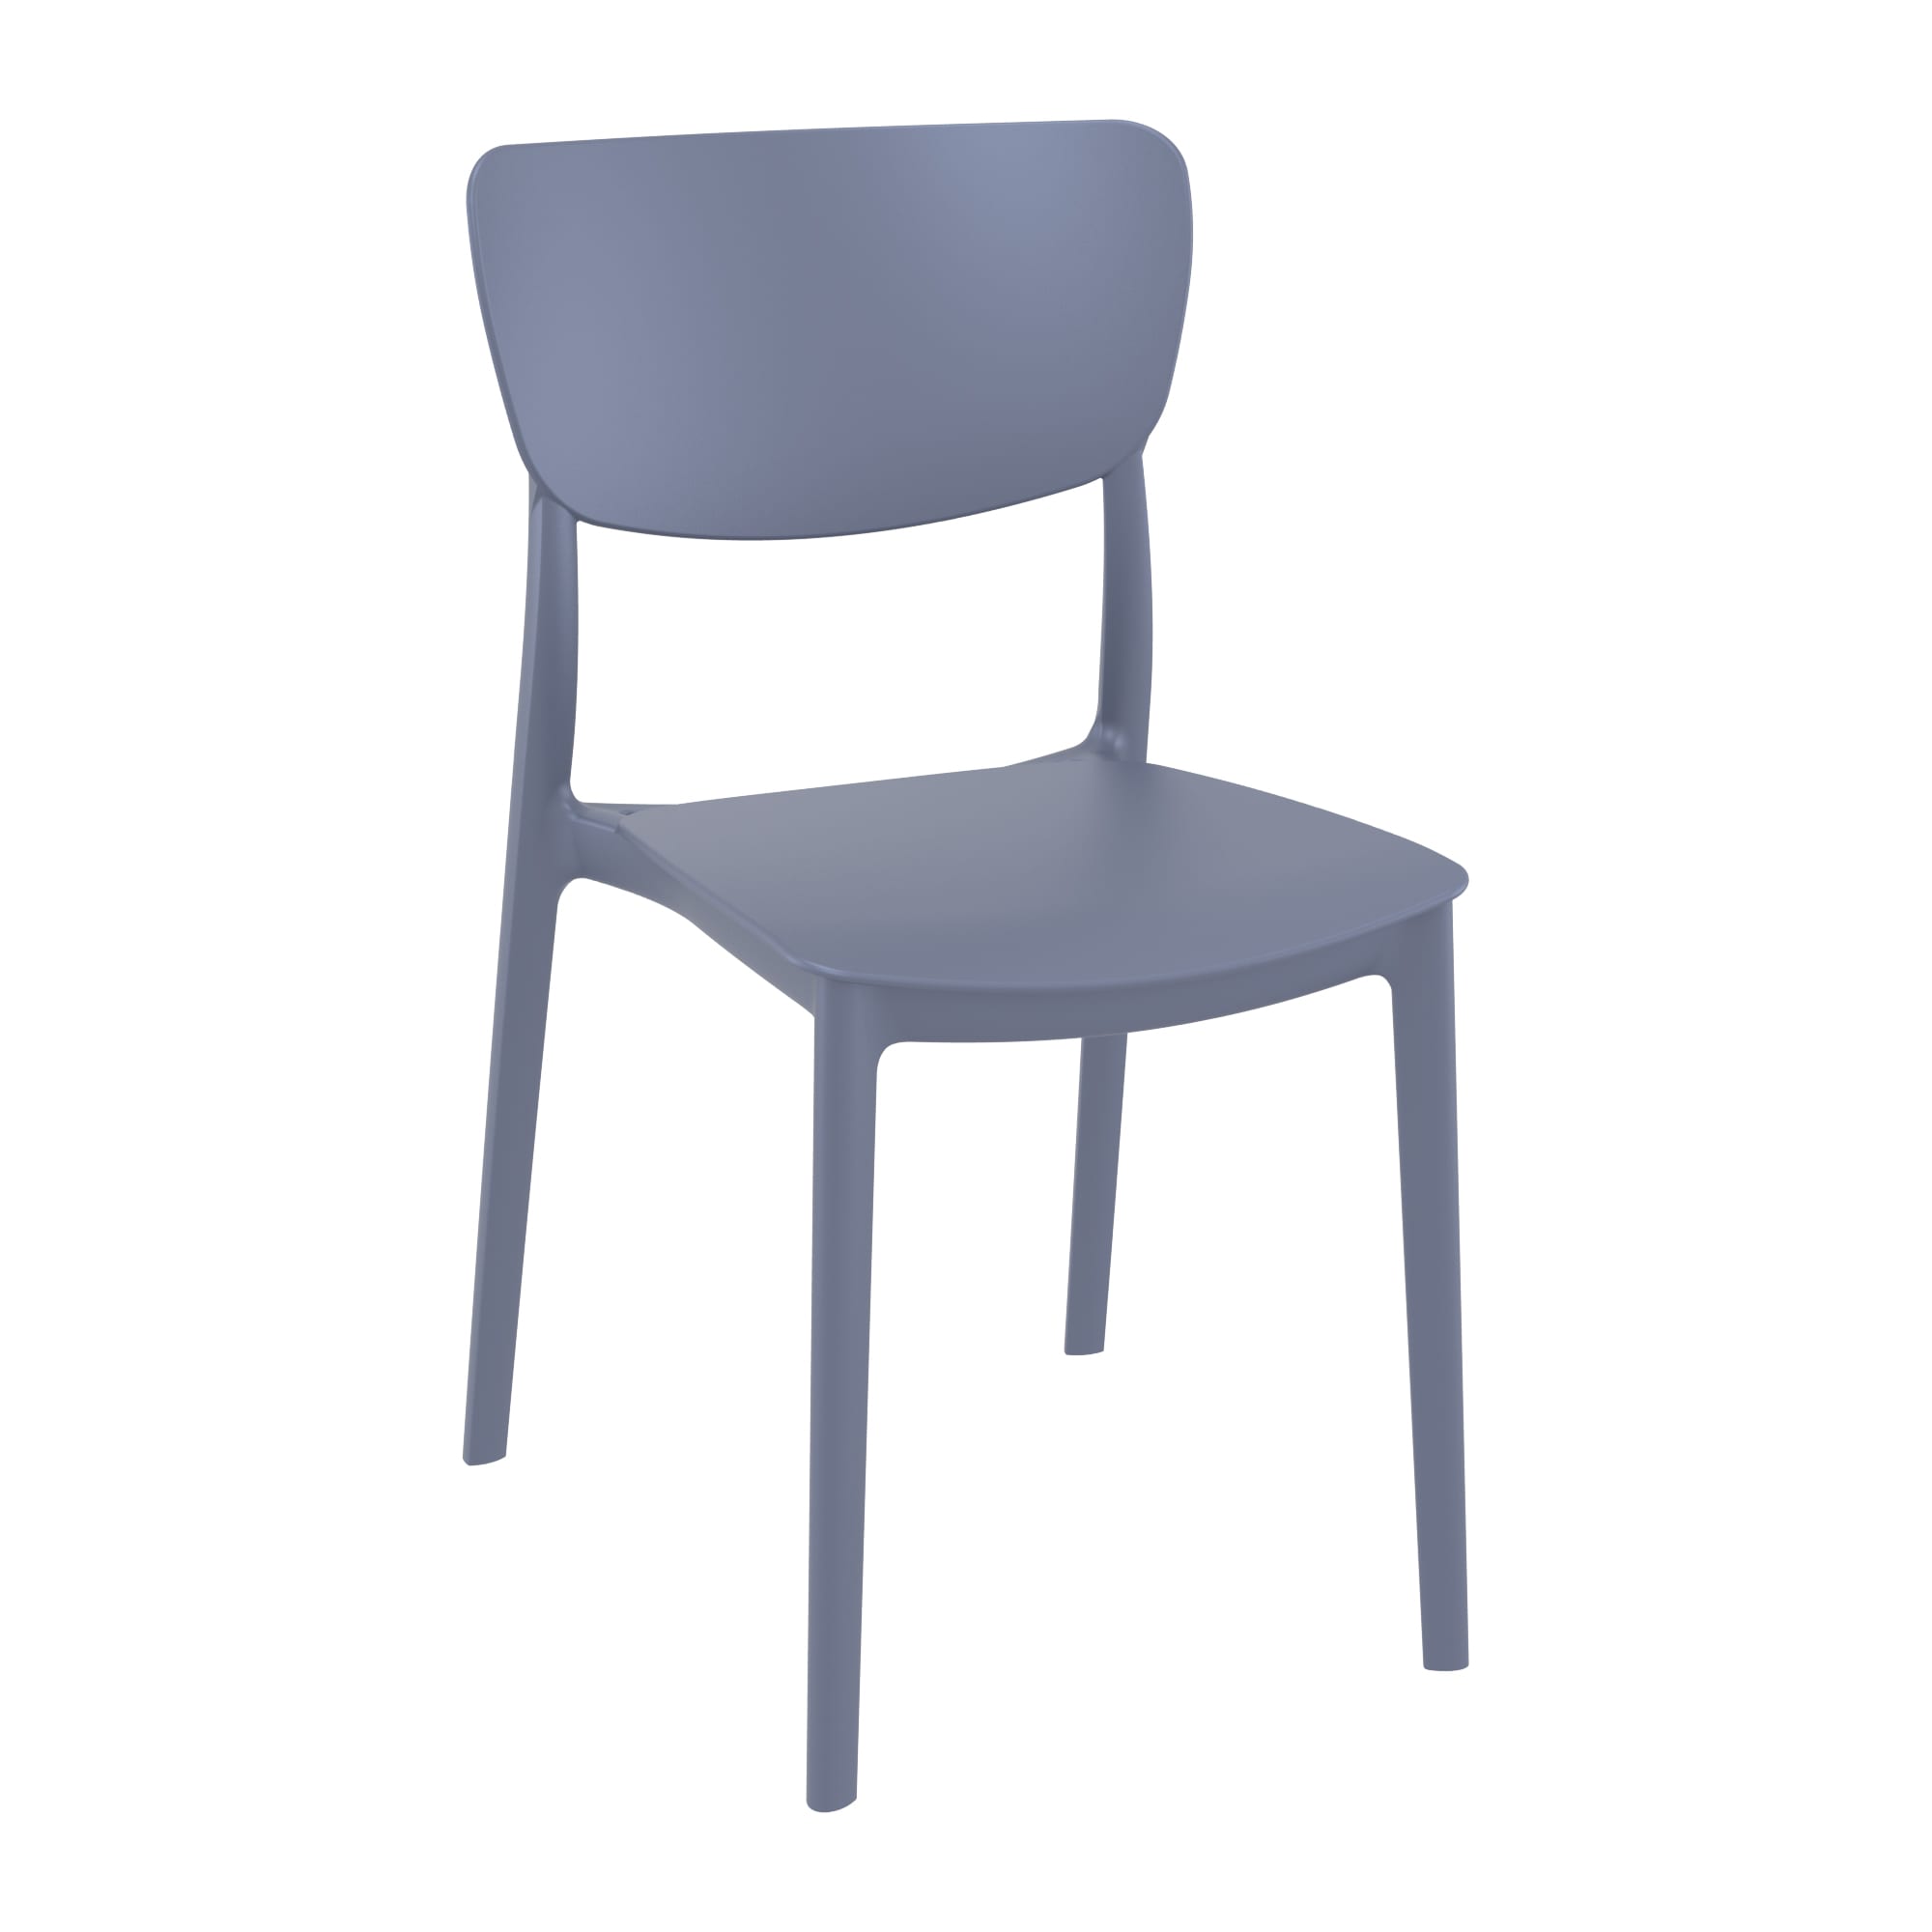 Manna Side Chair - Dark Grey